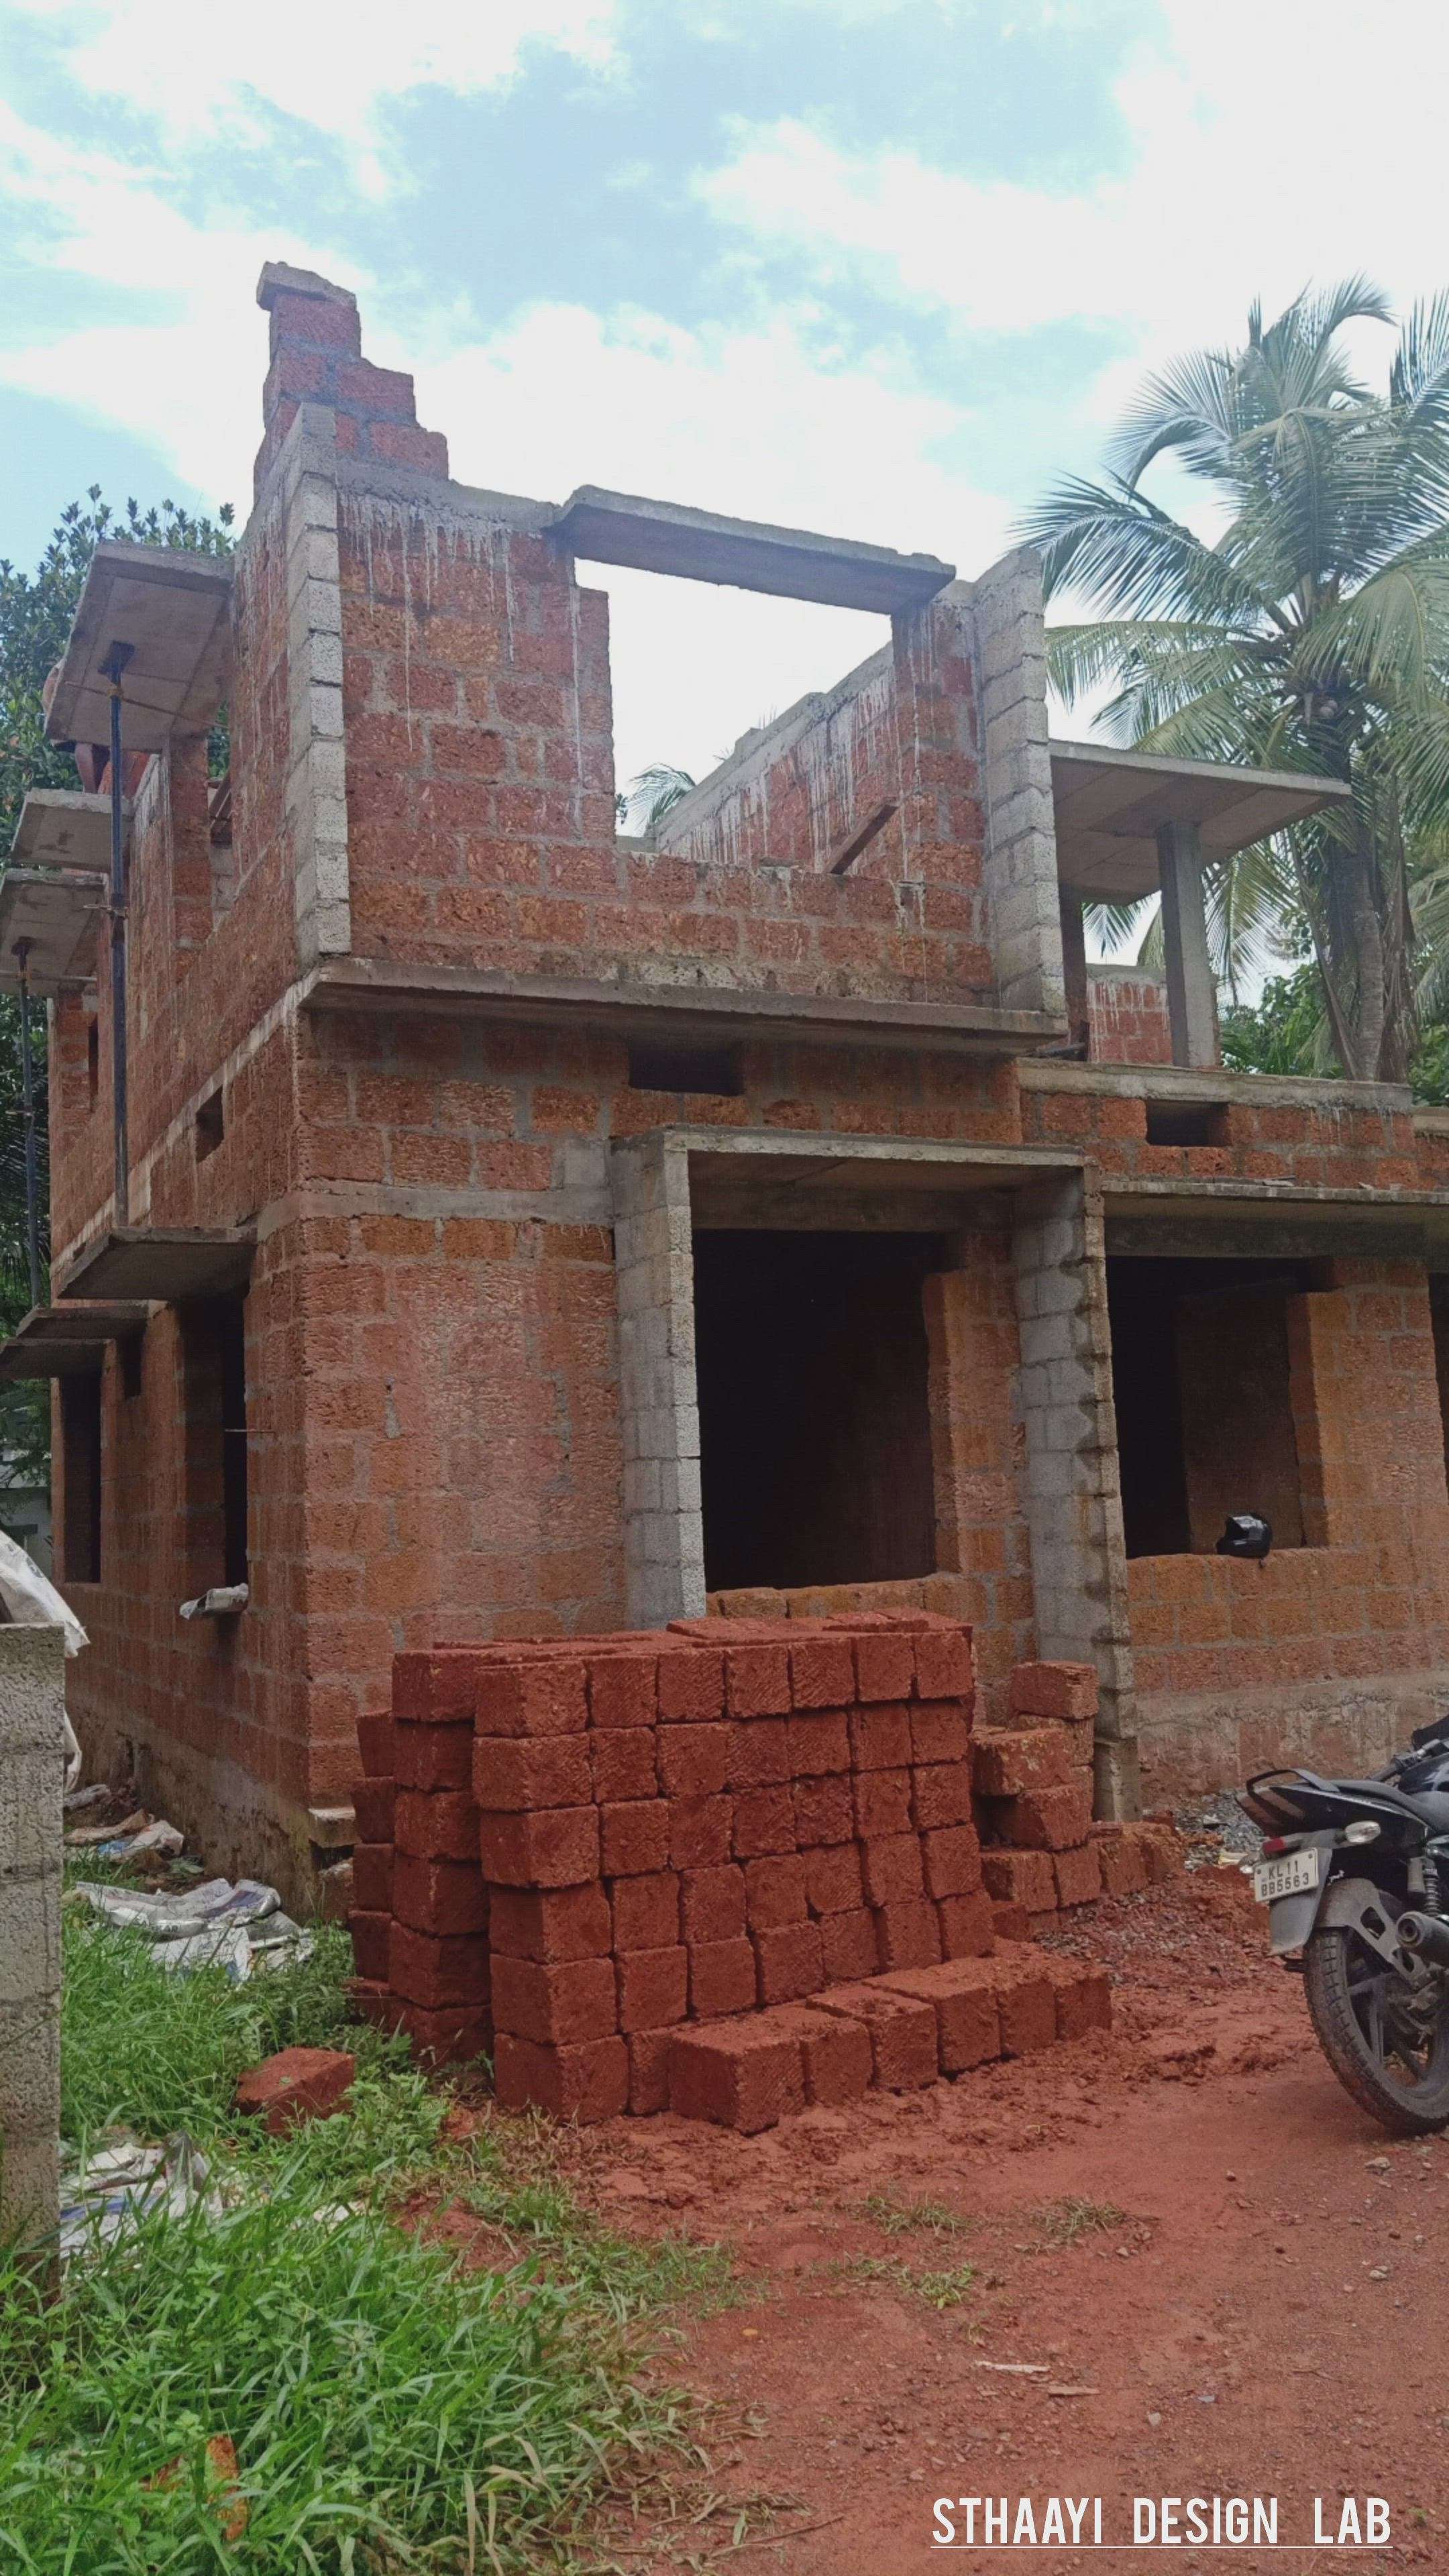 #4bhk #4centPlot #4cent ##HouseConstruction #KeralaStyleHouse #new_home #viralkolo #viralreels #viralvideos #koloviral #koloapp #sitestories #sitephotos